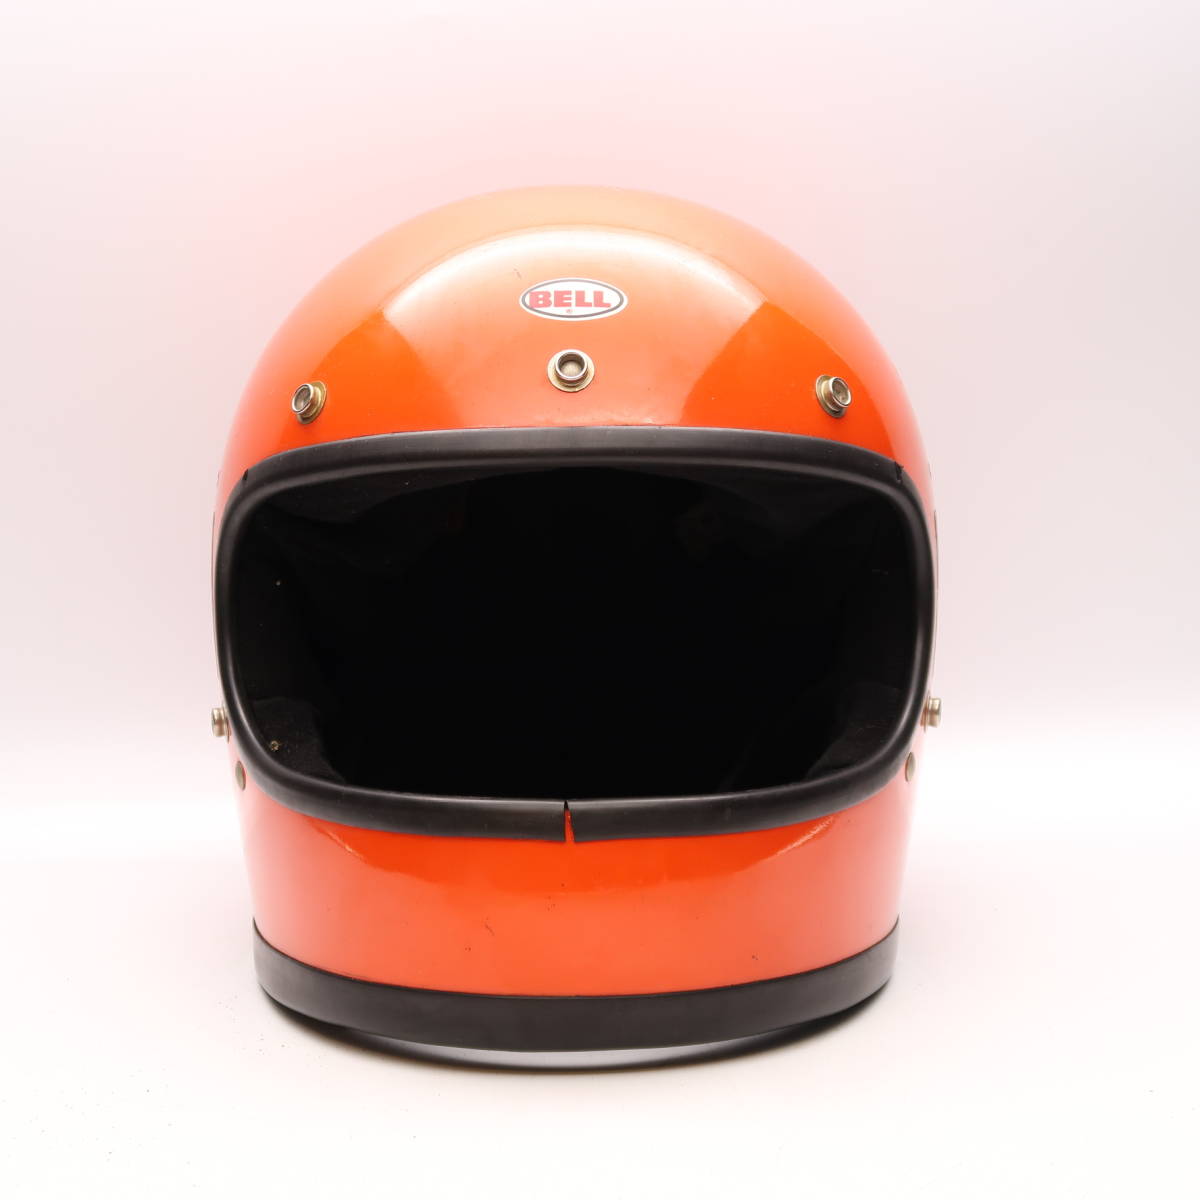 70s BELL STAR 120 orange full-face шлем bell Star 500TX группа ад GT380 KH400 Z1 Z2 CB750 Z750 KZ1000